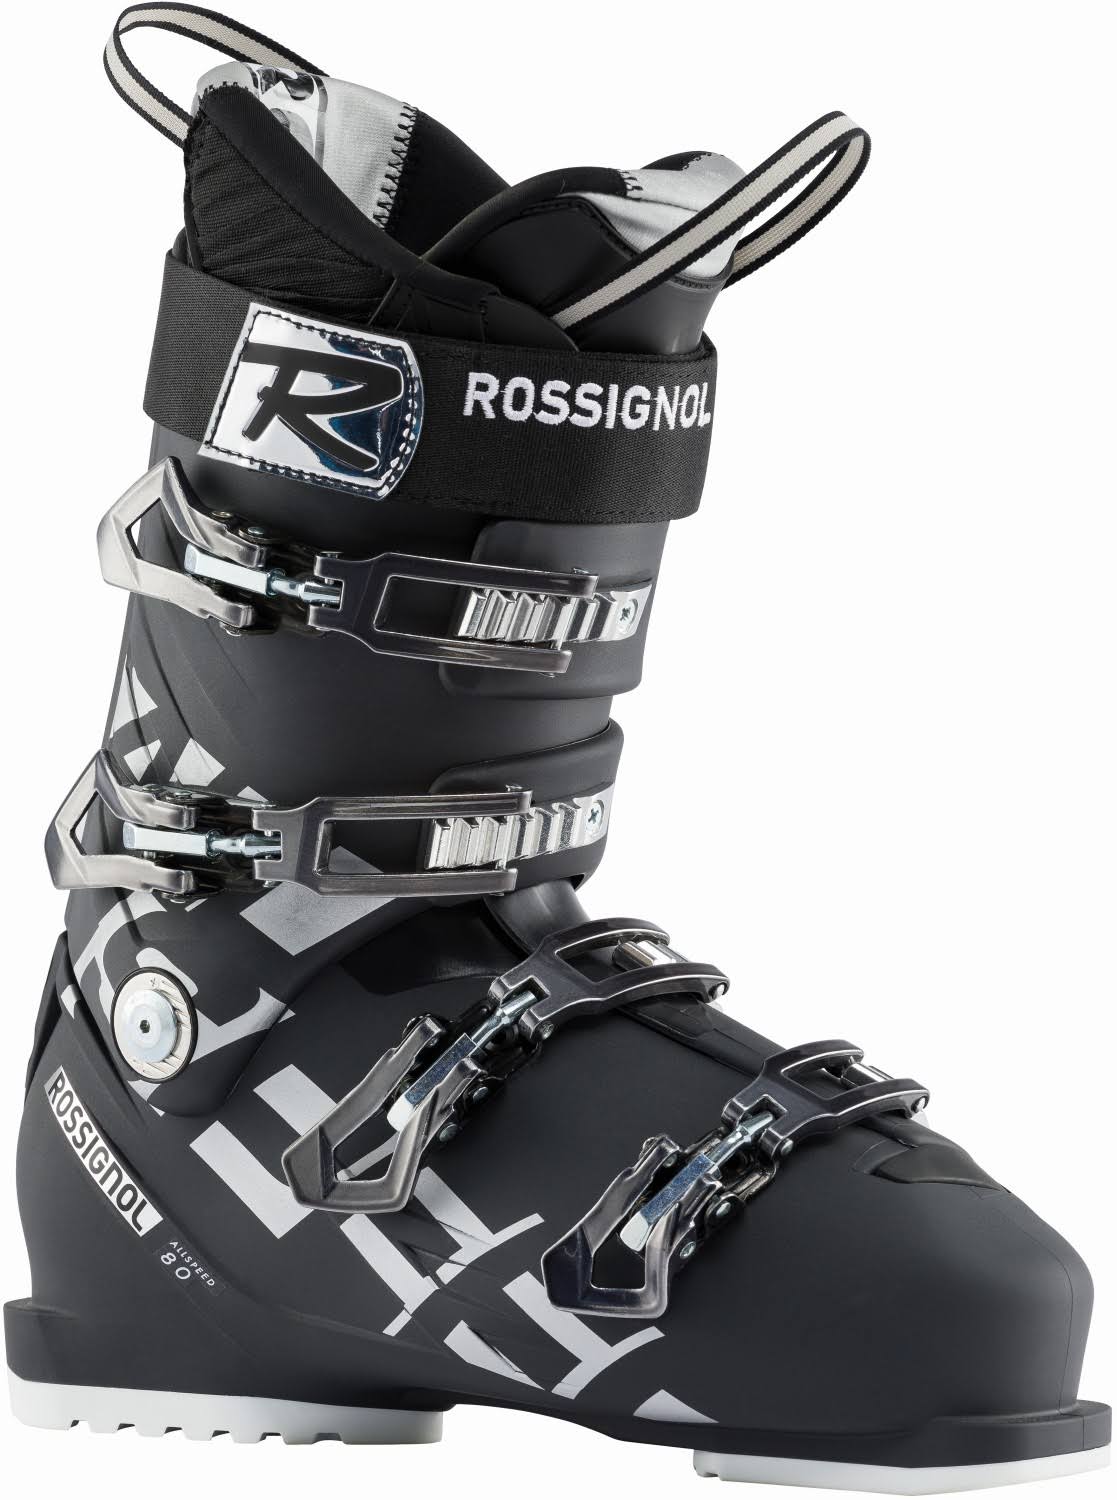 Rossignol - Allspeed 80 Anthracite - Men's Ski Boots